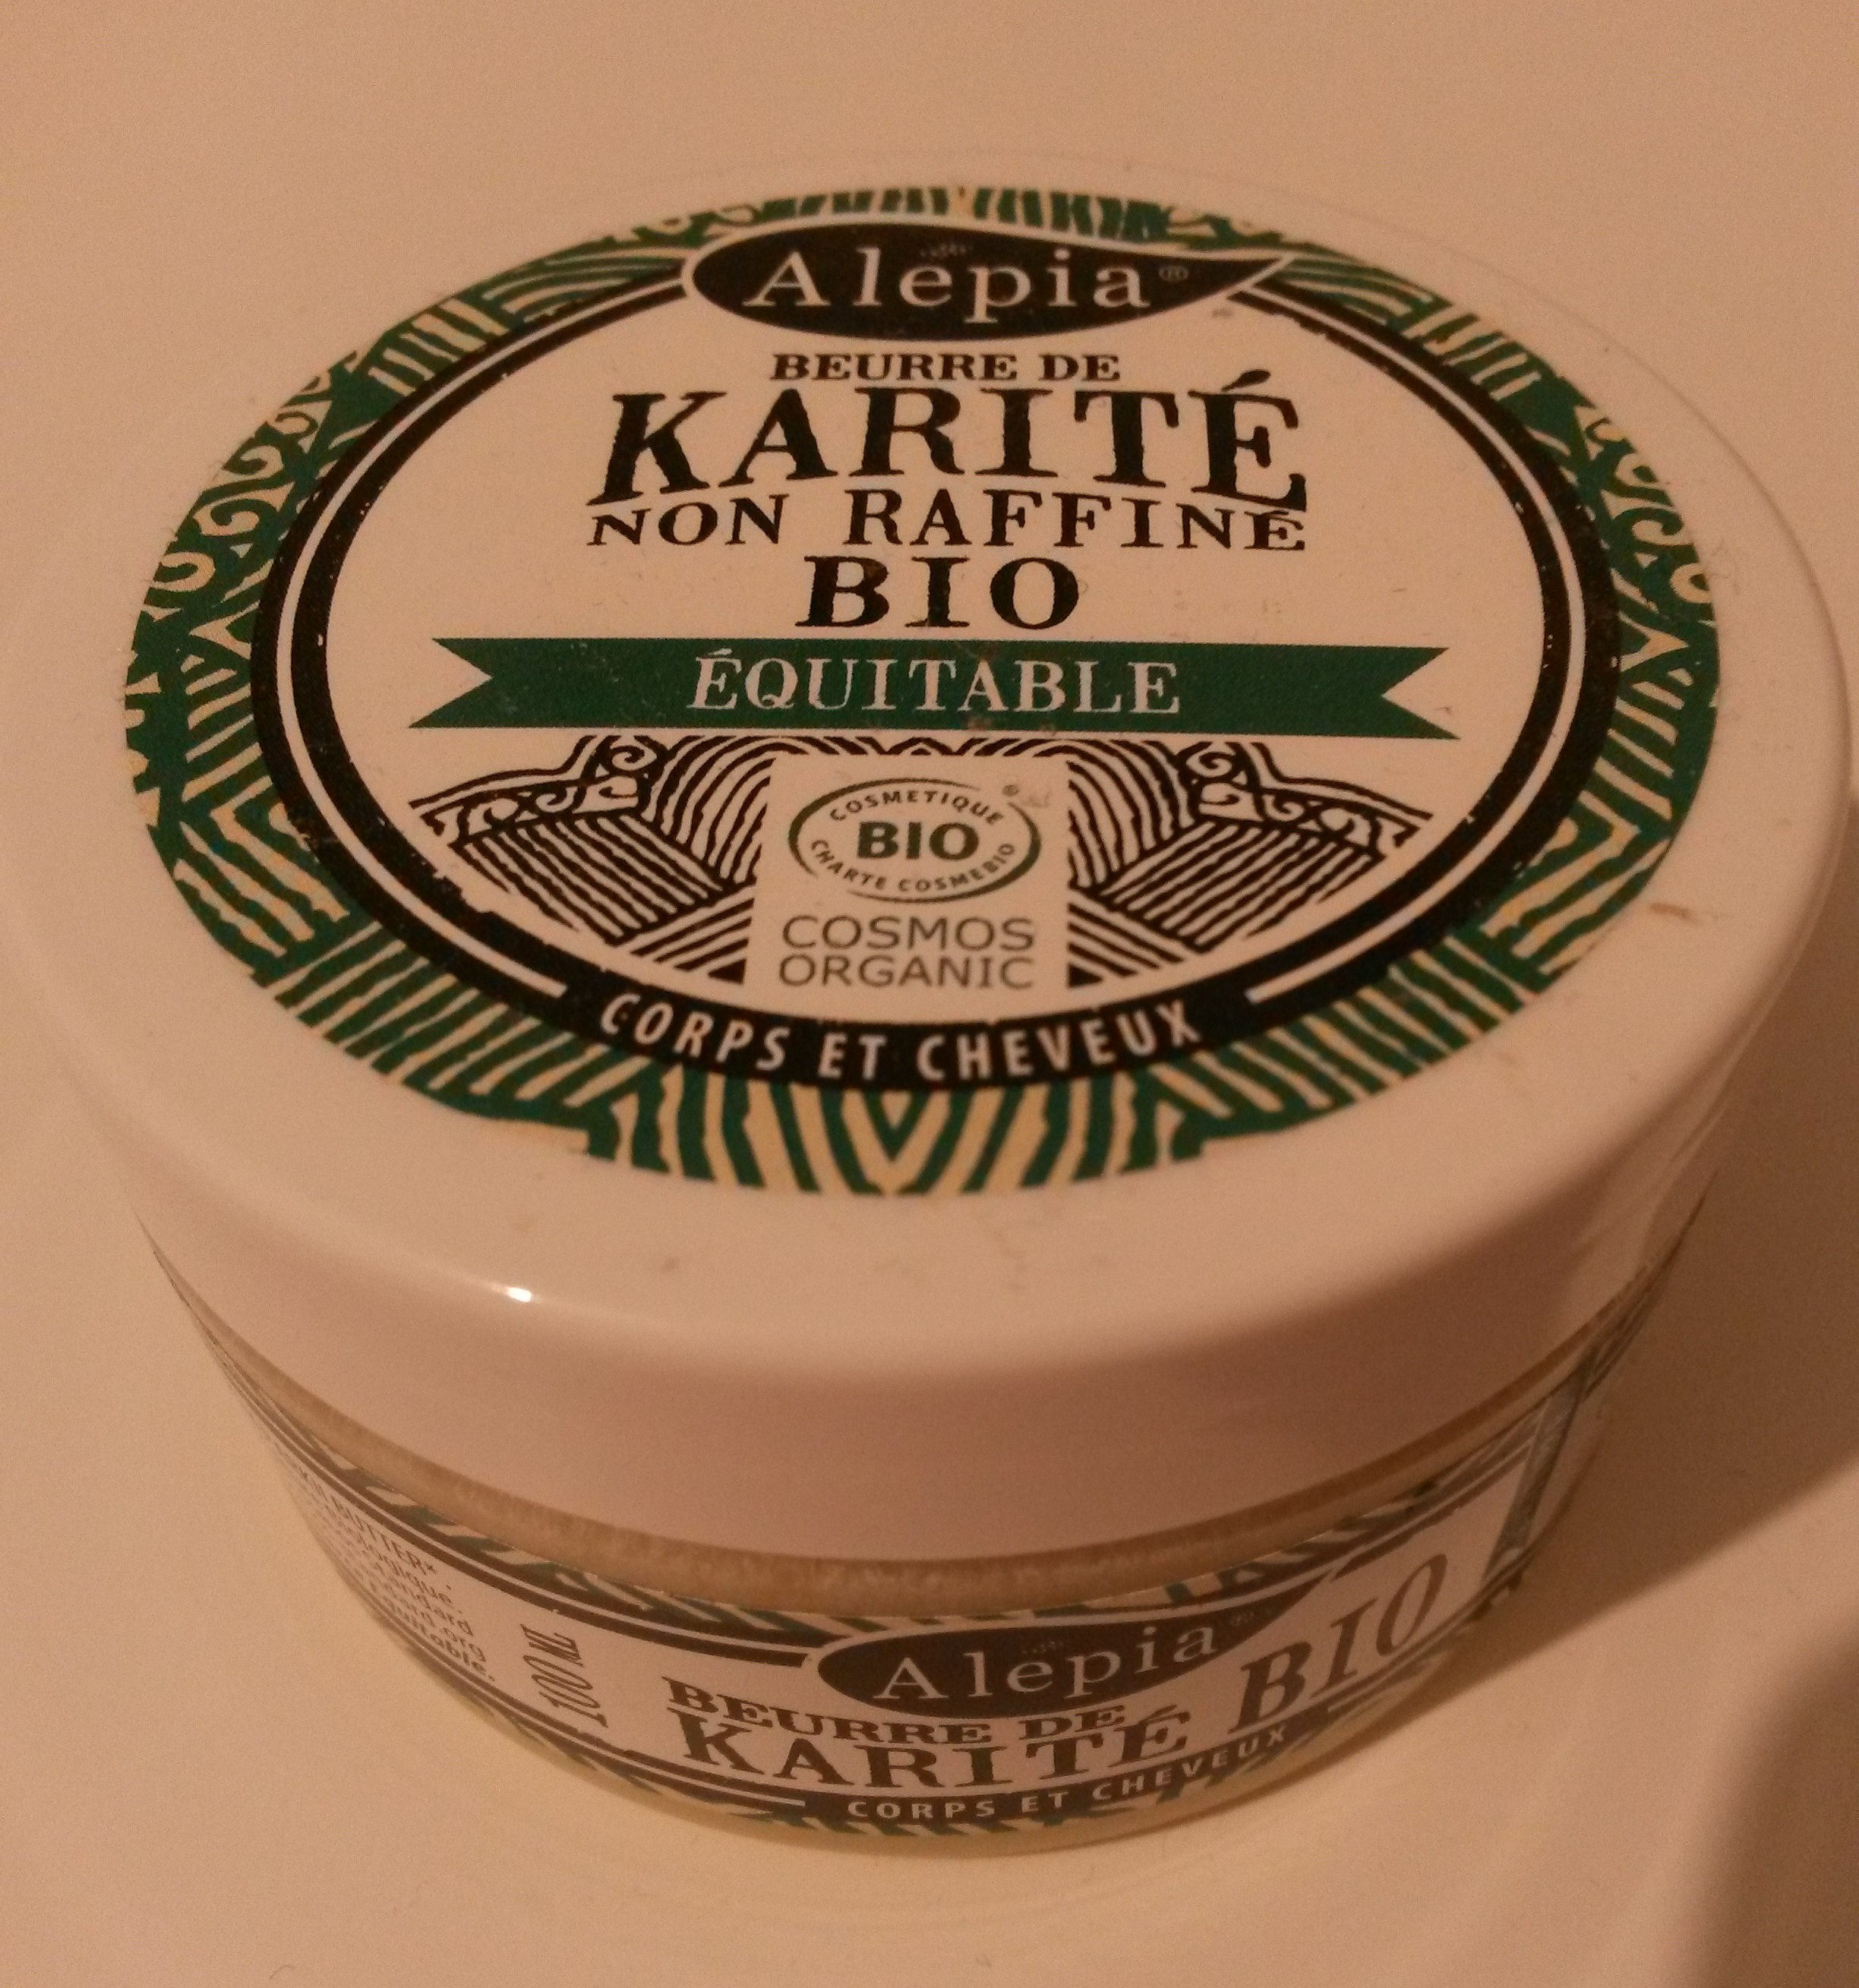 Beurre de karité - non raffiné, bio, équitable - Produkt - fr